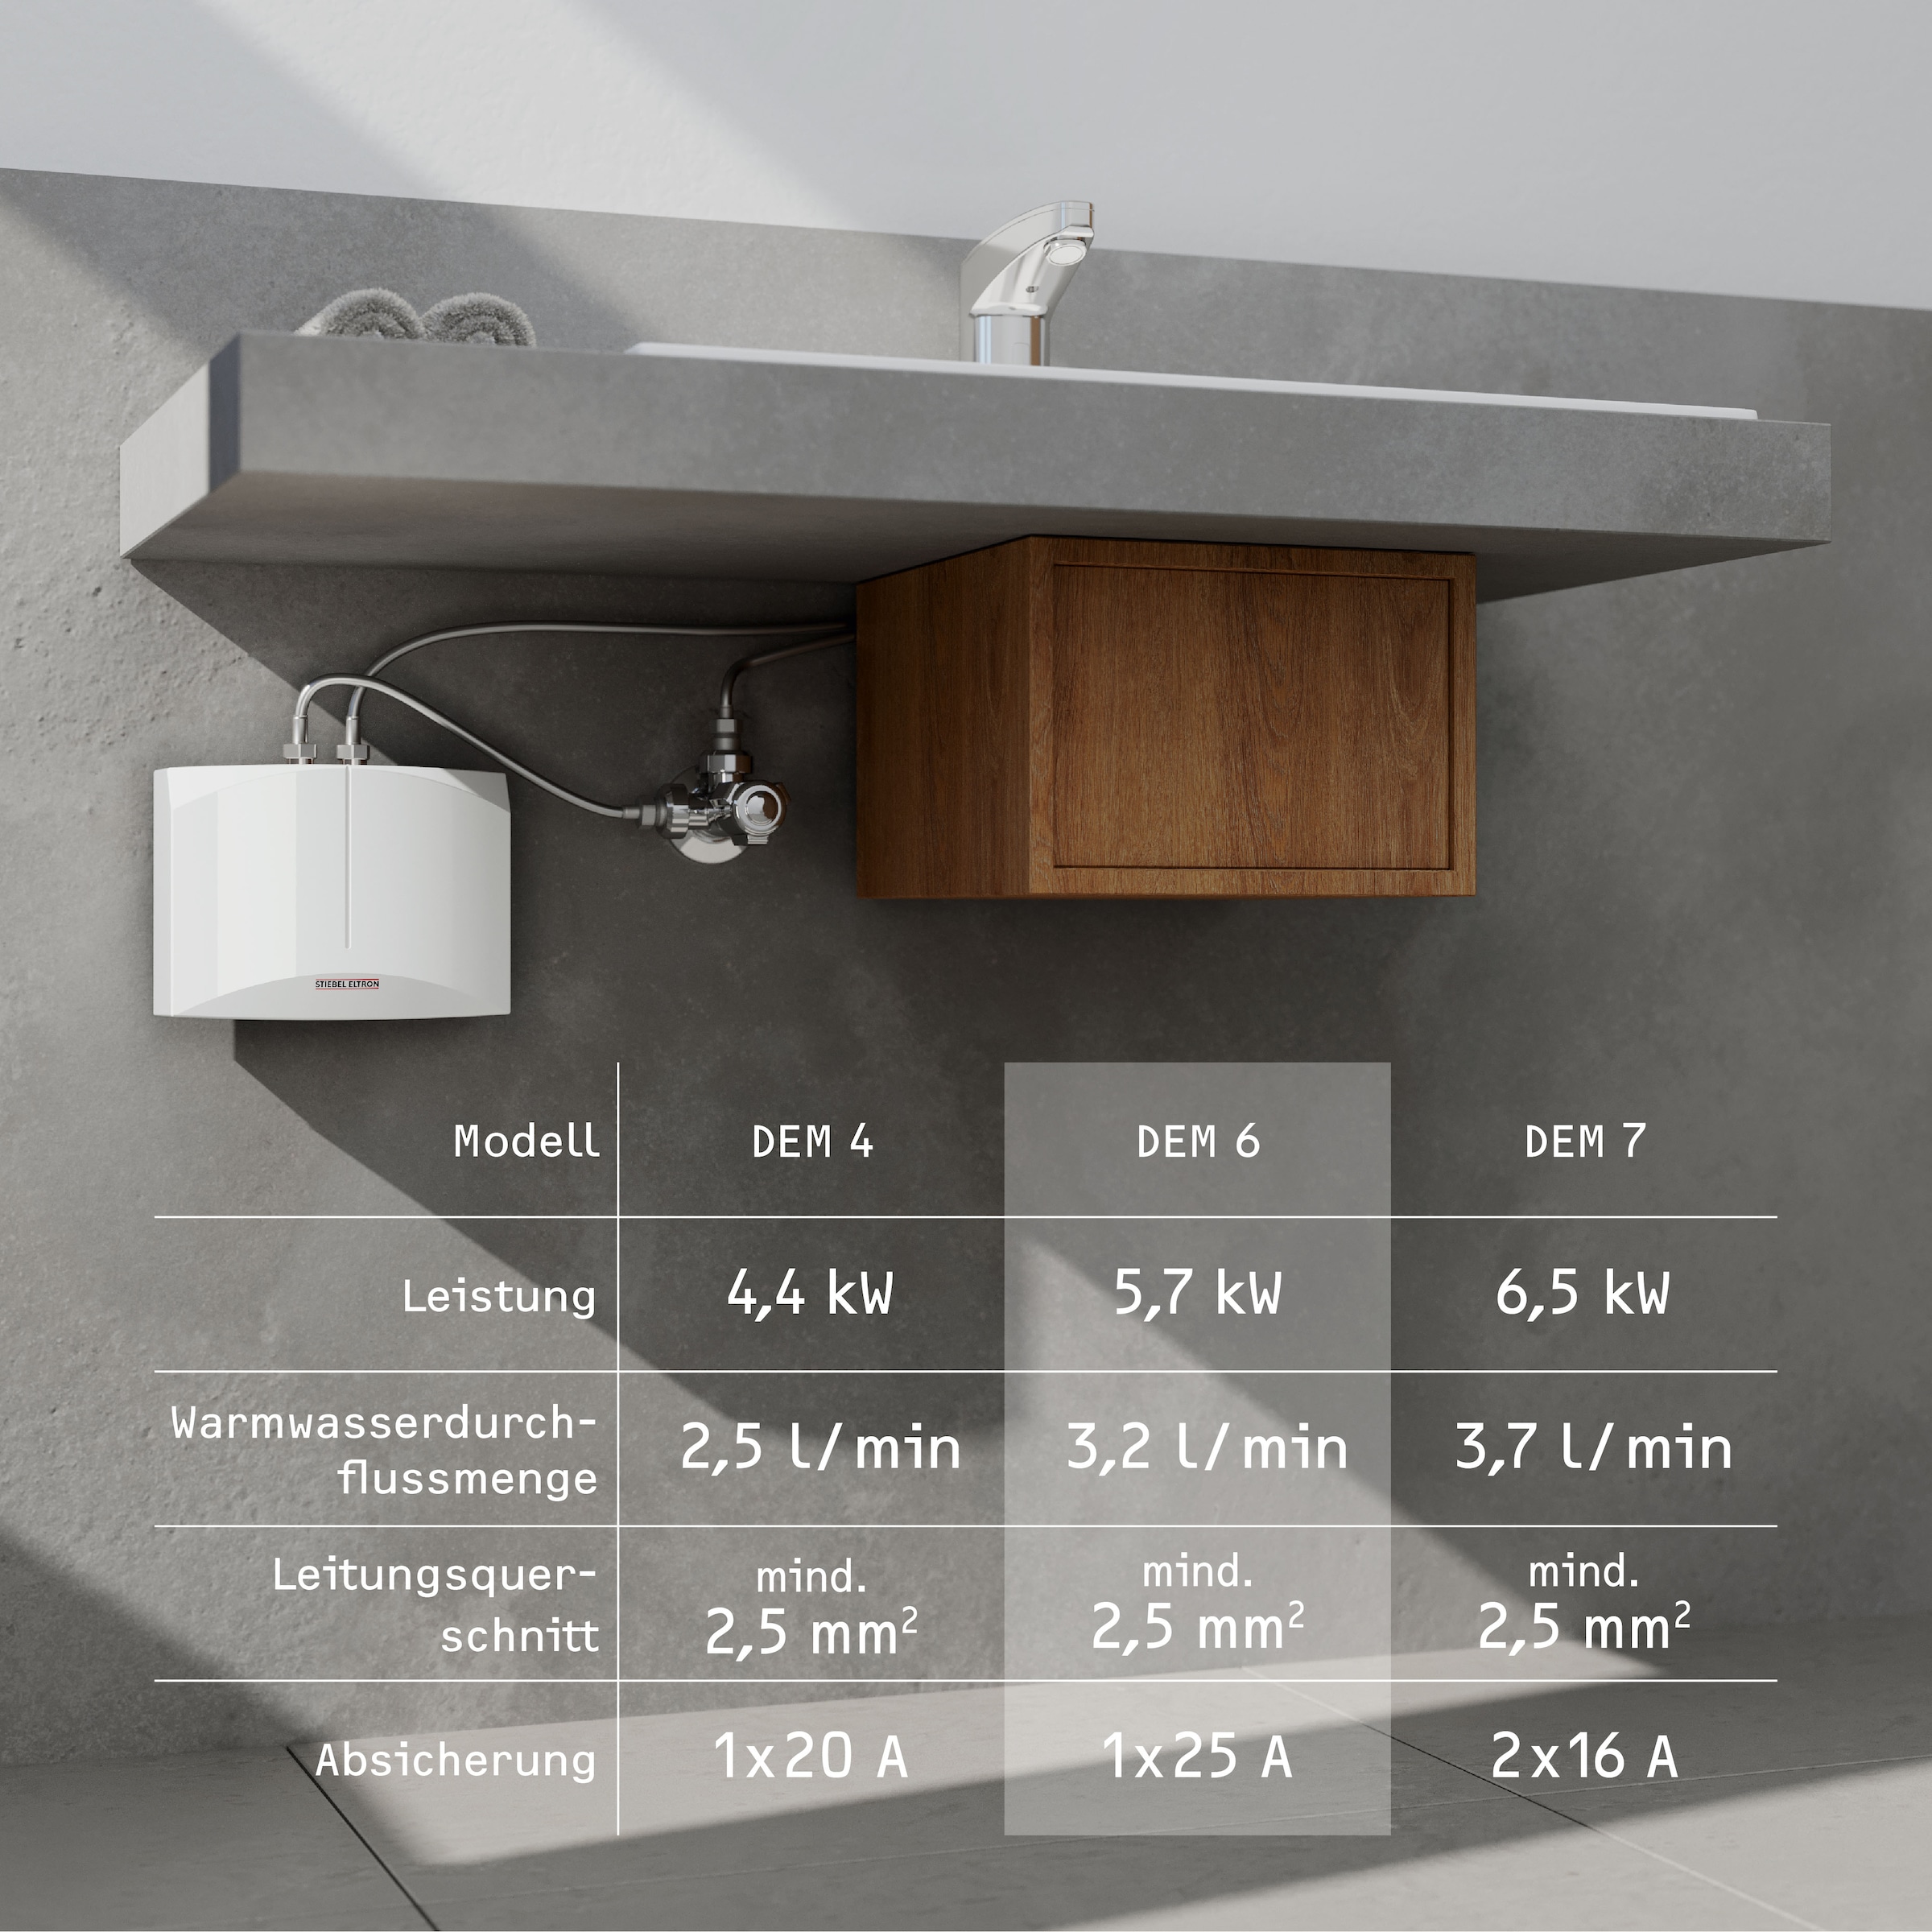 STIEBEL ELTRON Klein-Durchlauferhitzer »DEM 6«, elektronisch, für Handwaschbecken, 5,7 kW, Festanschluss 230V